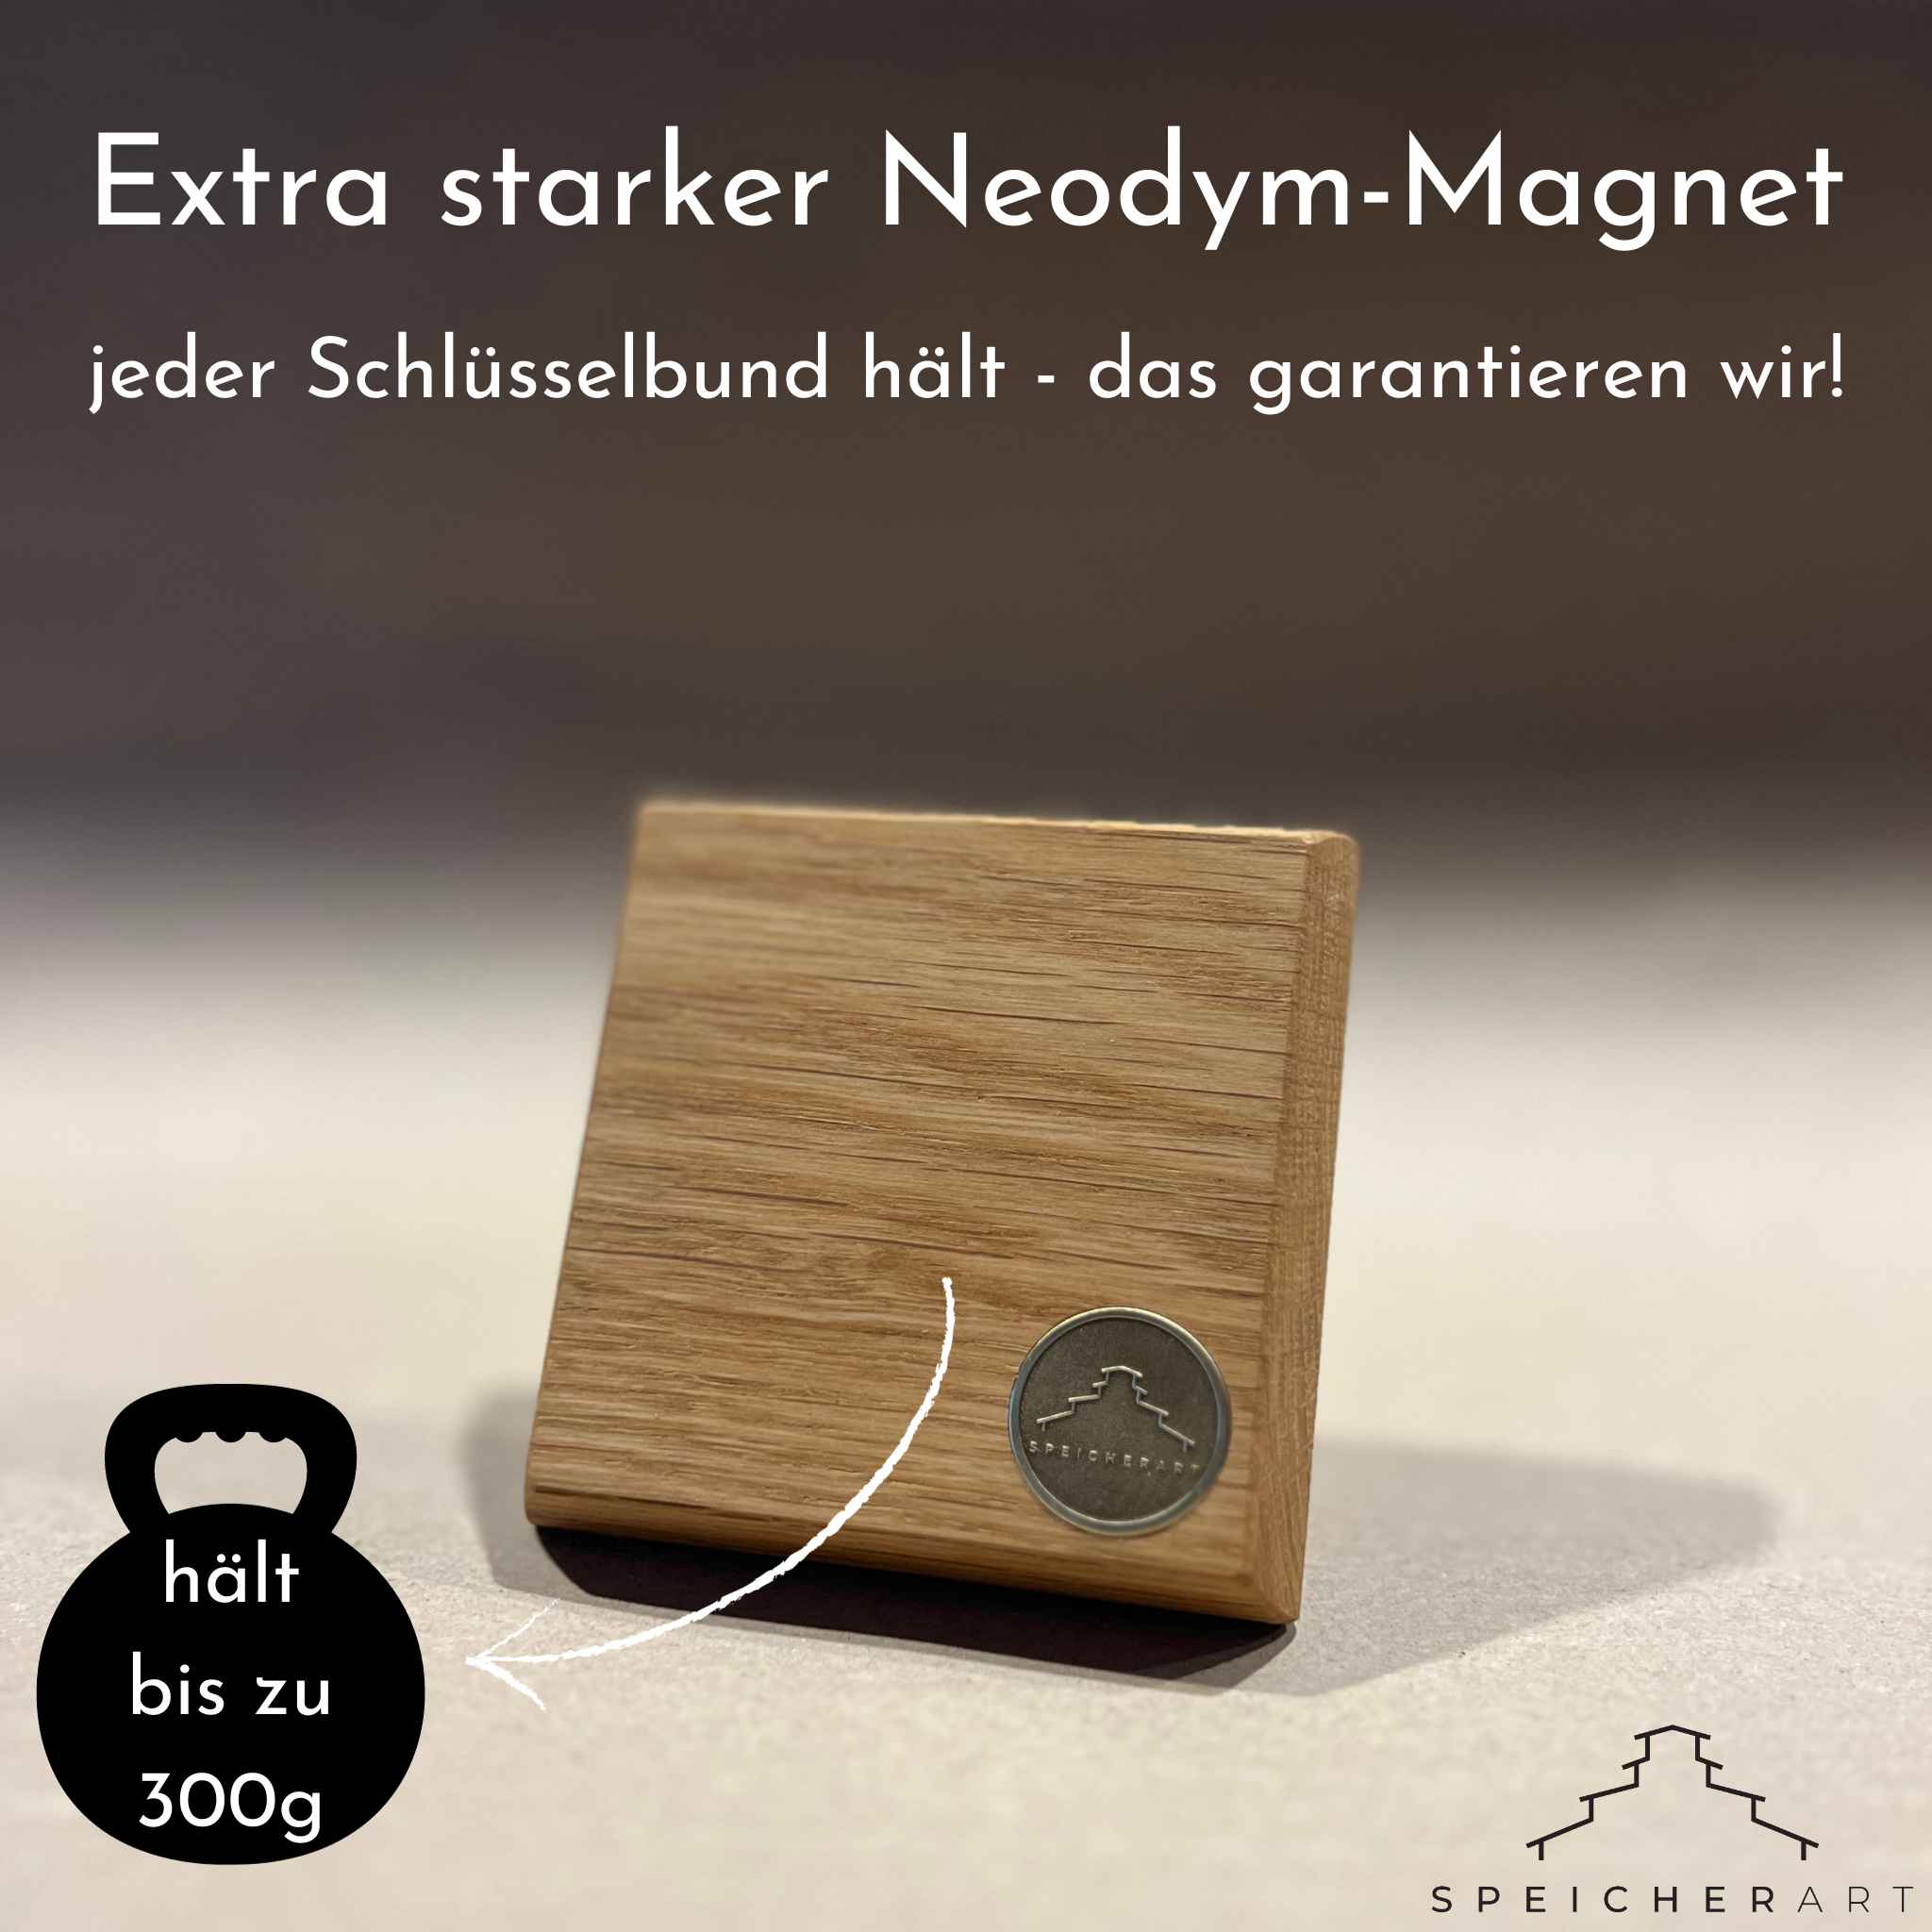 Schlüsselboard Holz Ima: Ein praktisches Accessoire aus Massivholz. Extra starke Neodym-Magneten für garantierten Halt.